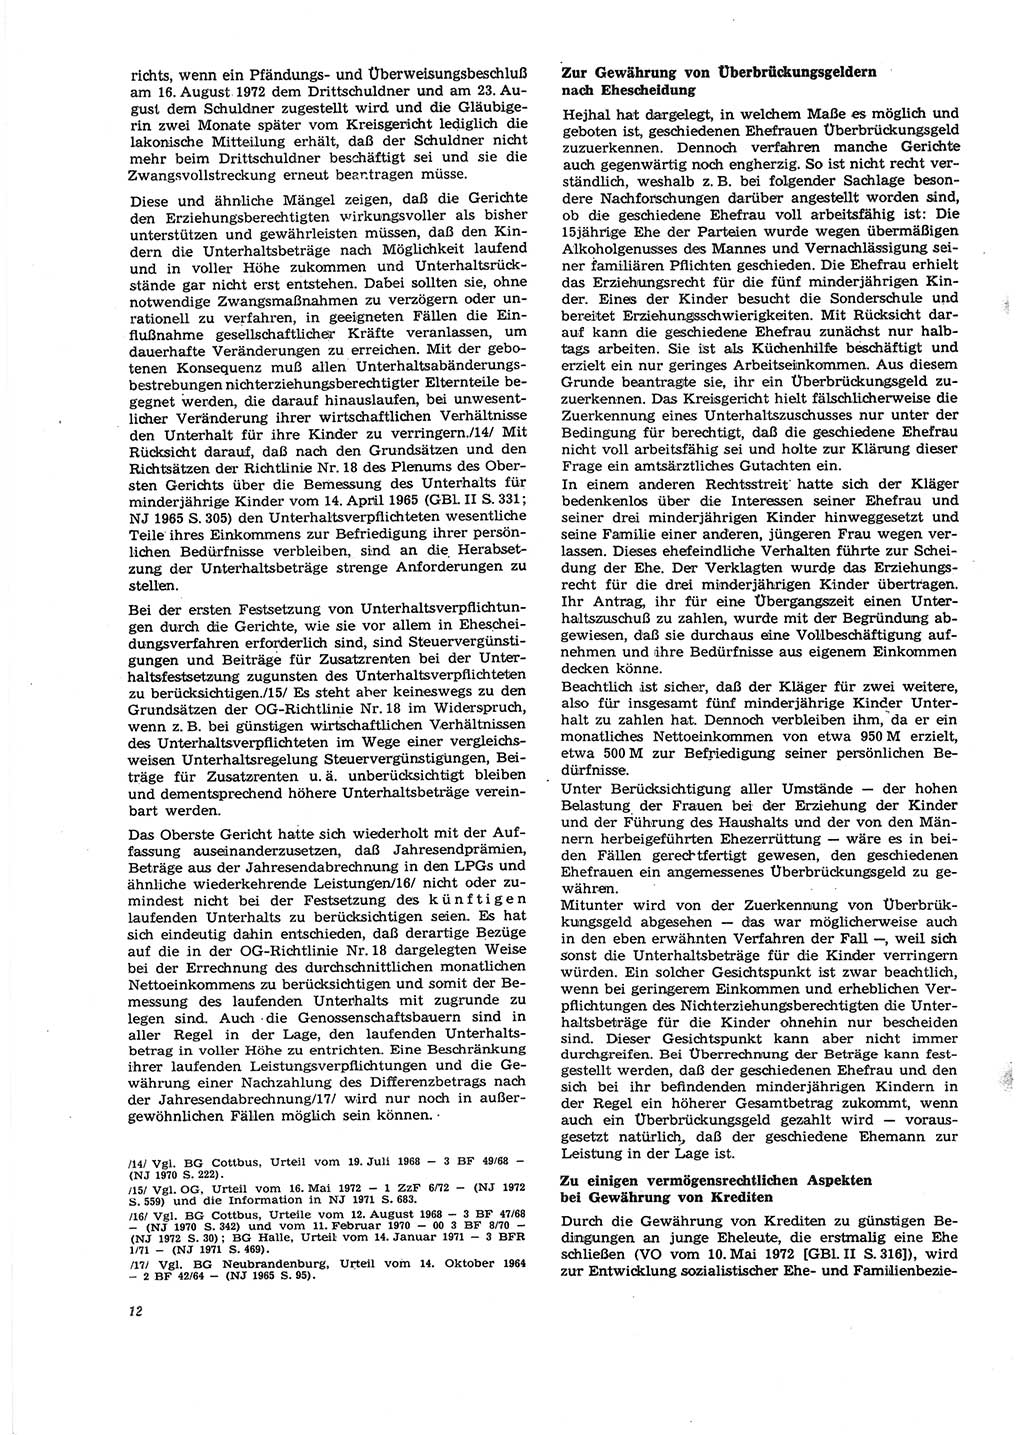 Neue Justiz (NJ), Zeitschrift für Recht und Rechtswissenschaft [Deutsche Demokratische Republik (DDR)], 27. Jahrgang 1973, Seite 12 (NJ DDR 1973, S. 12)